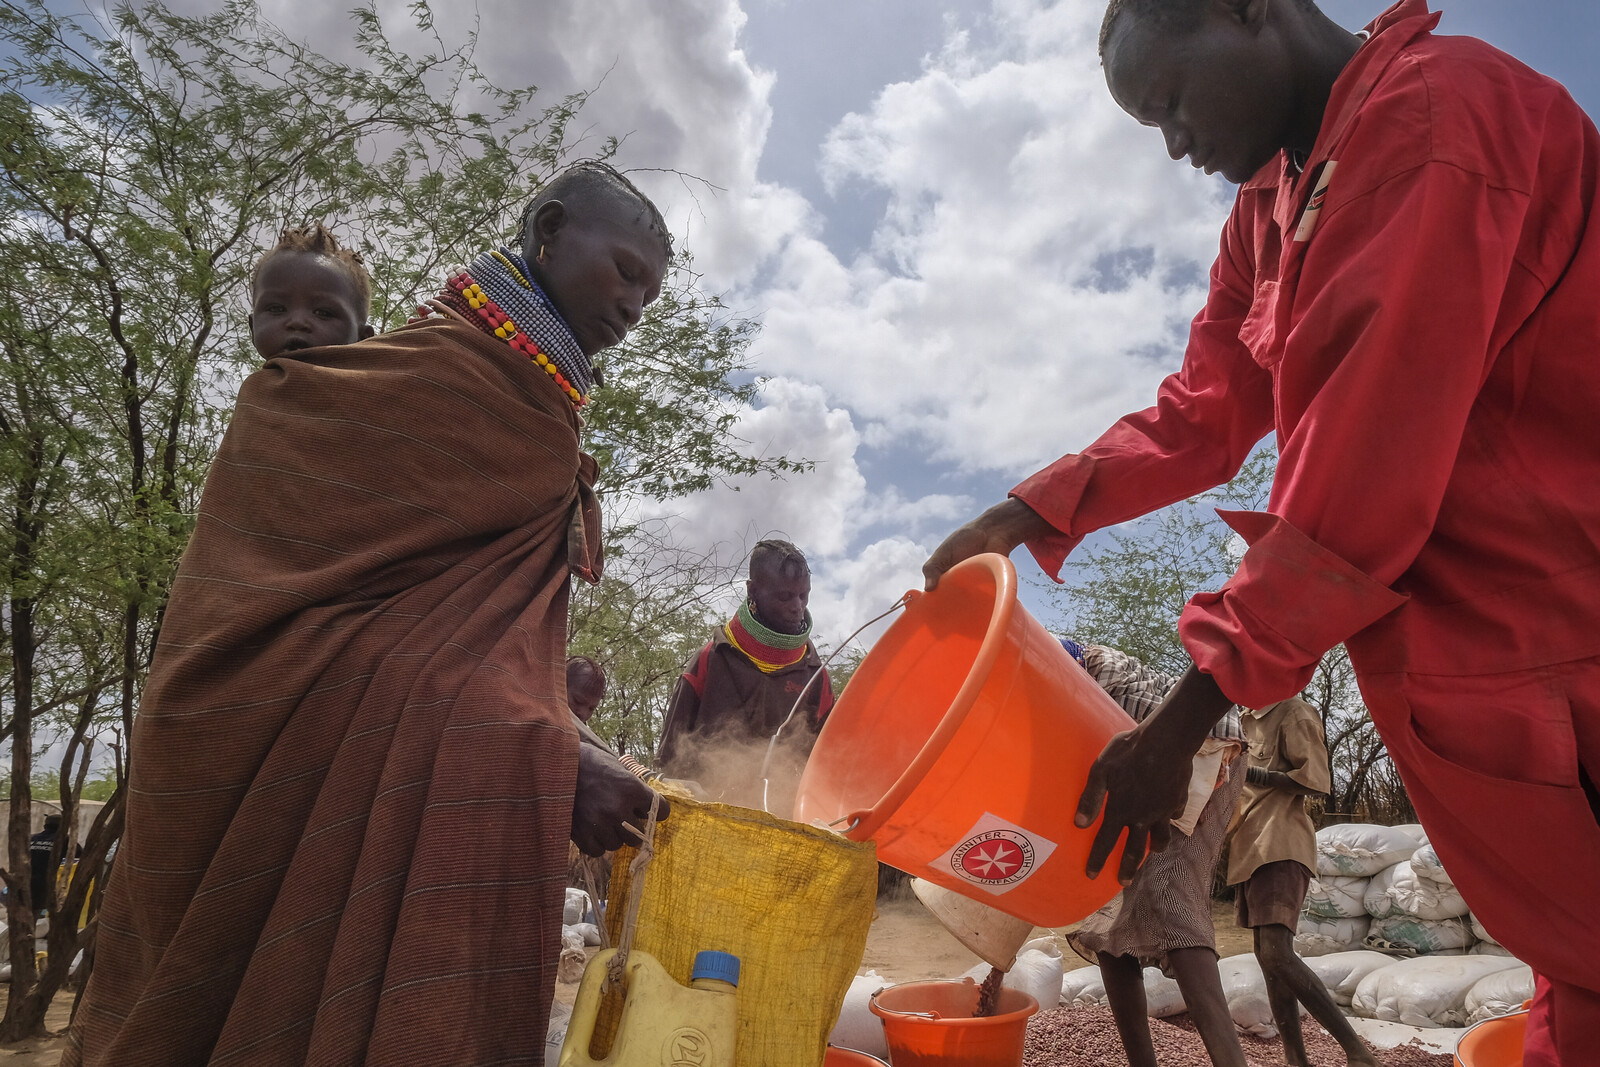 Hilfsorganisationen verteilen Nahrungsmittel an Kinder, Frauen und Männer in Kenia. Dort herrscht eine Hungersnot